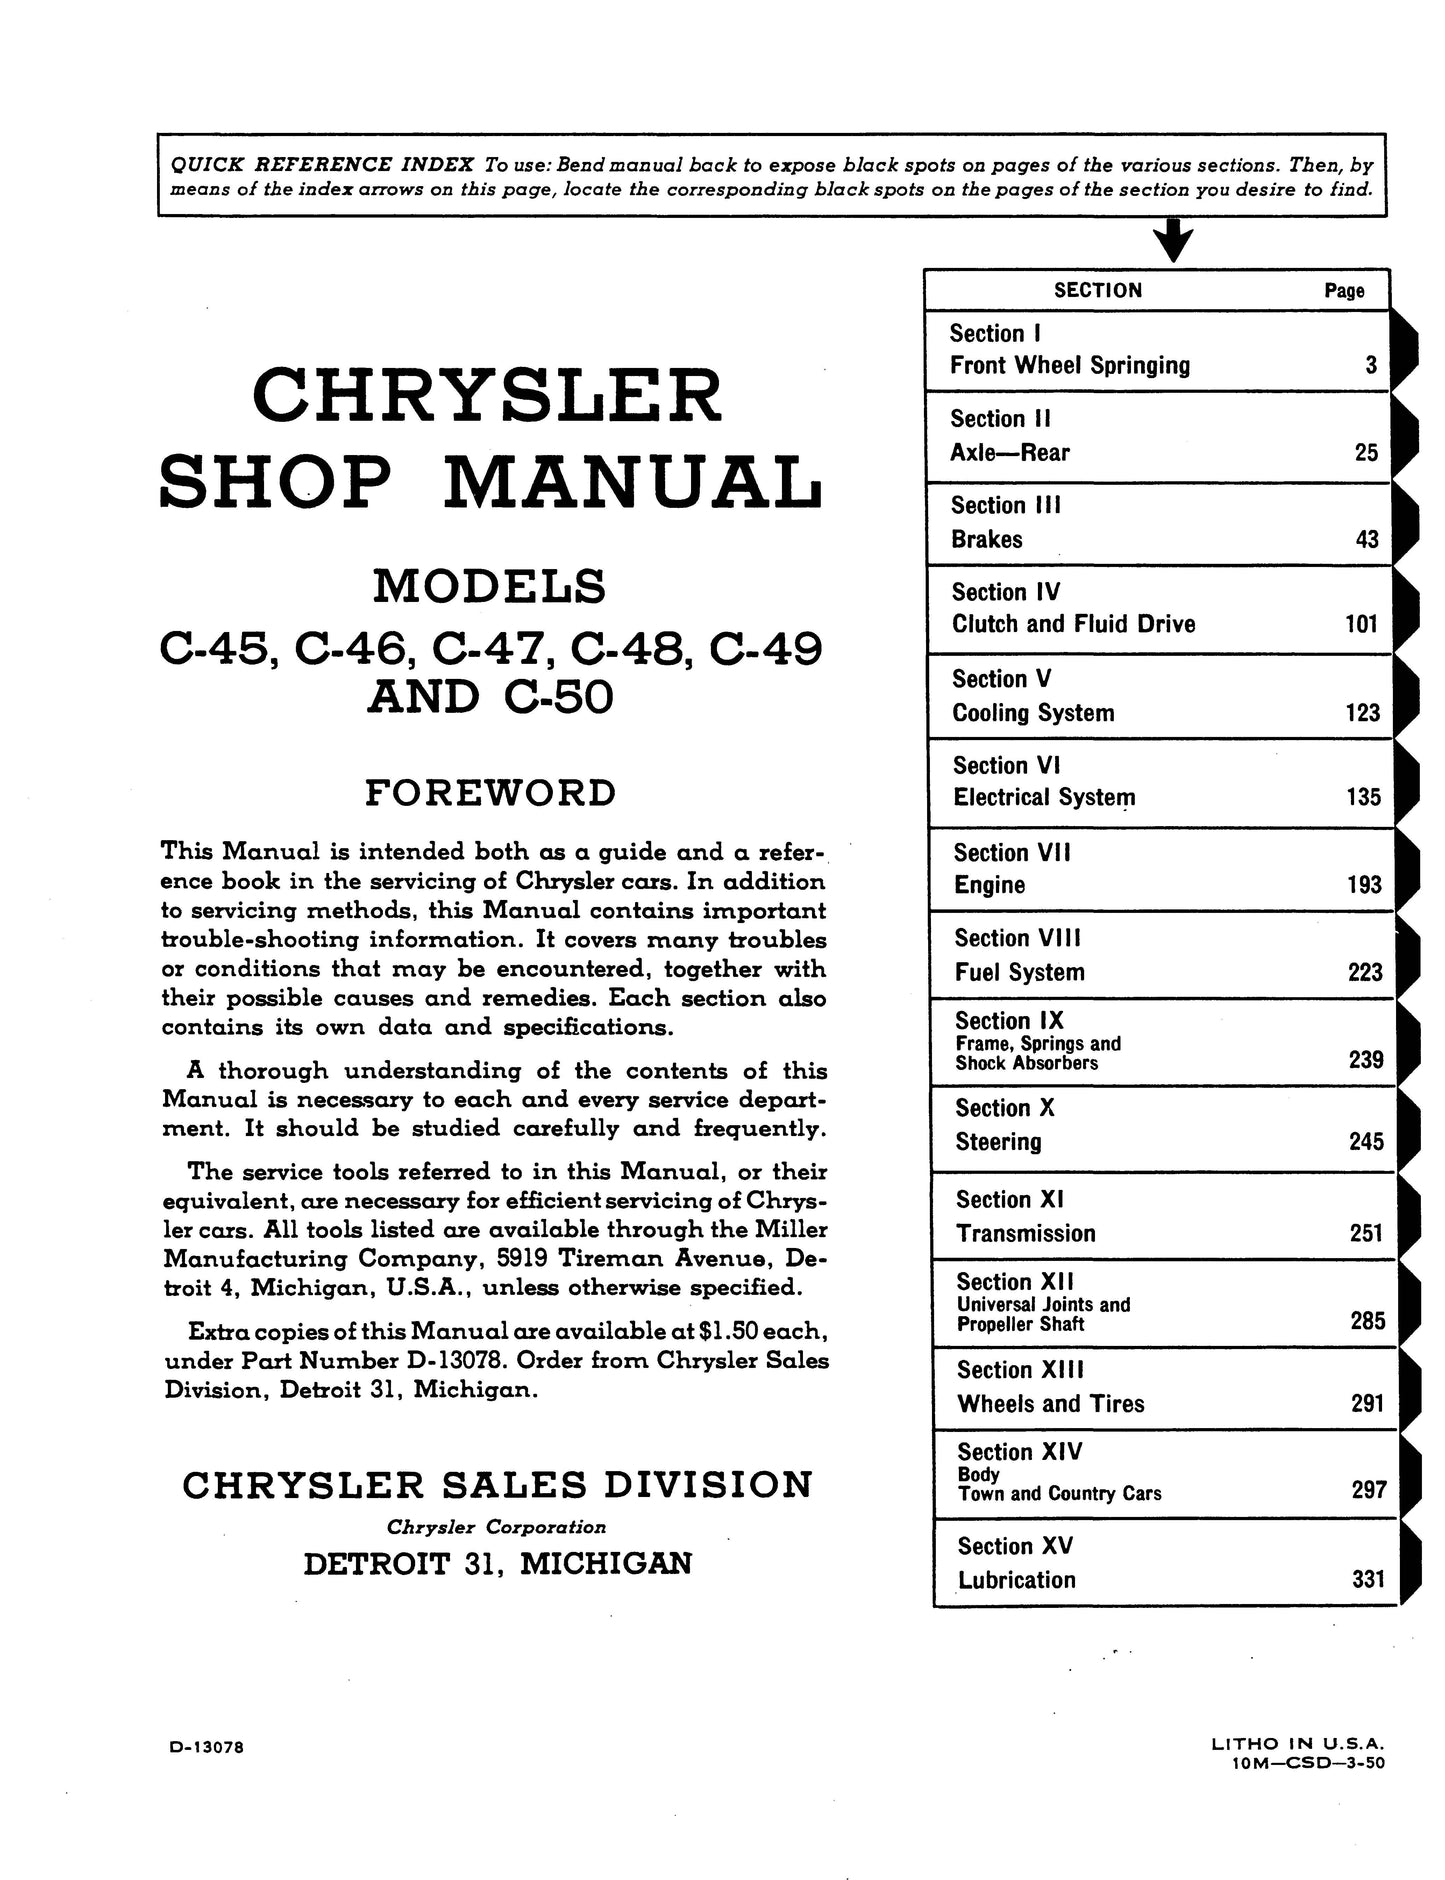 1949-1952 Chrysler Shop Manual All Models